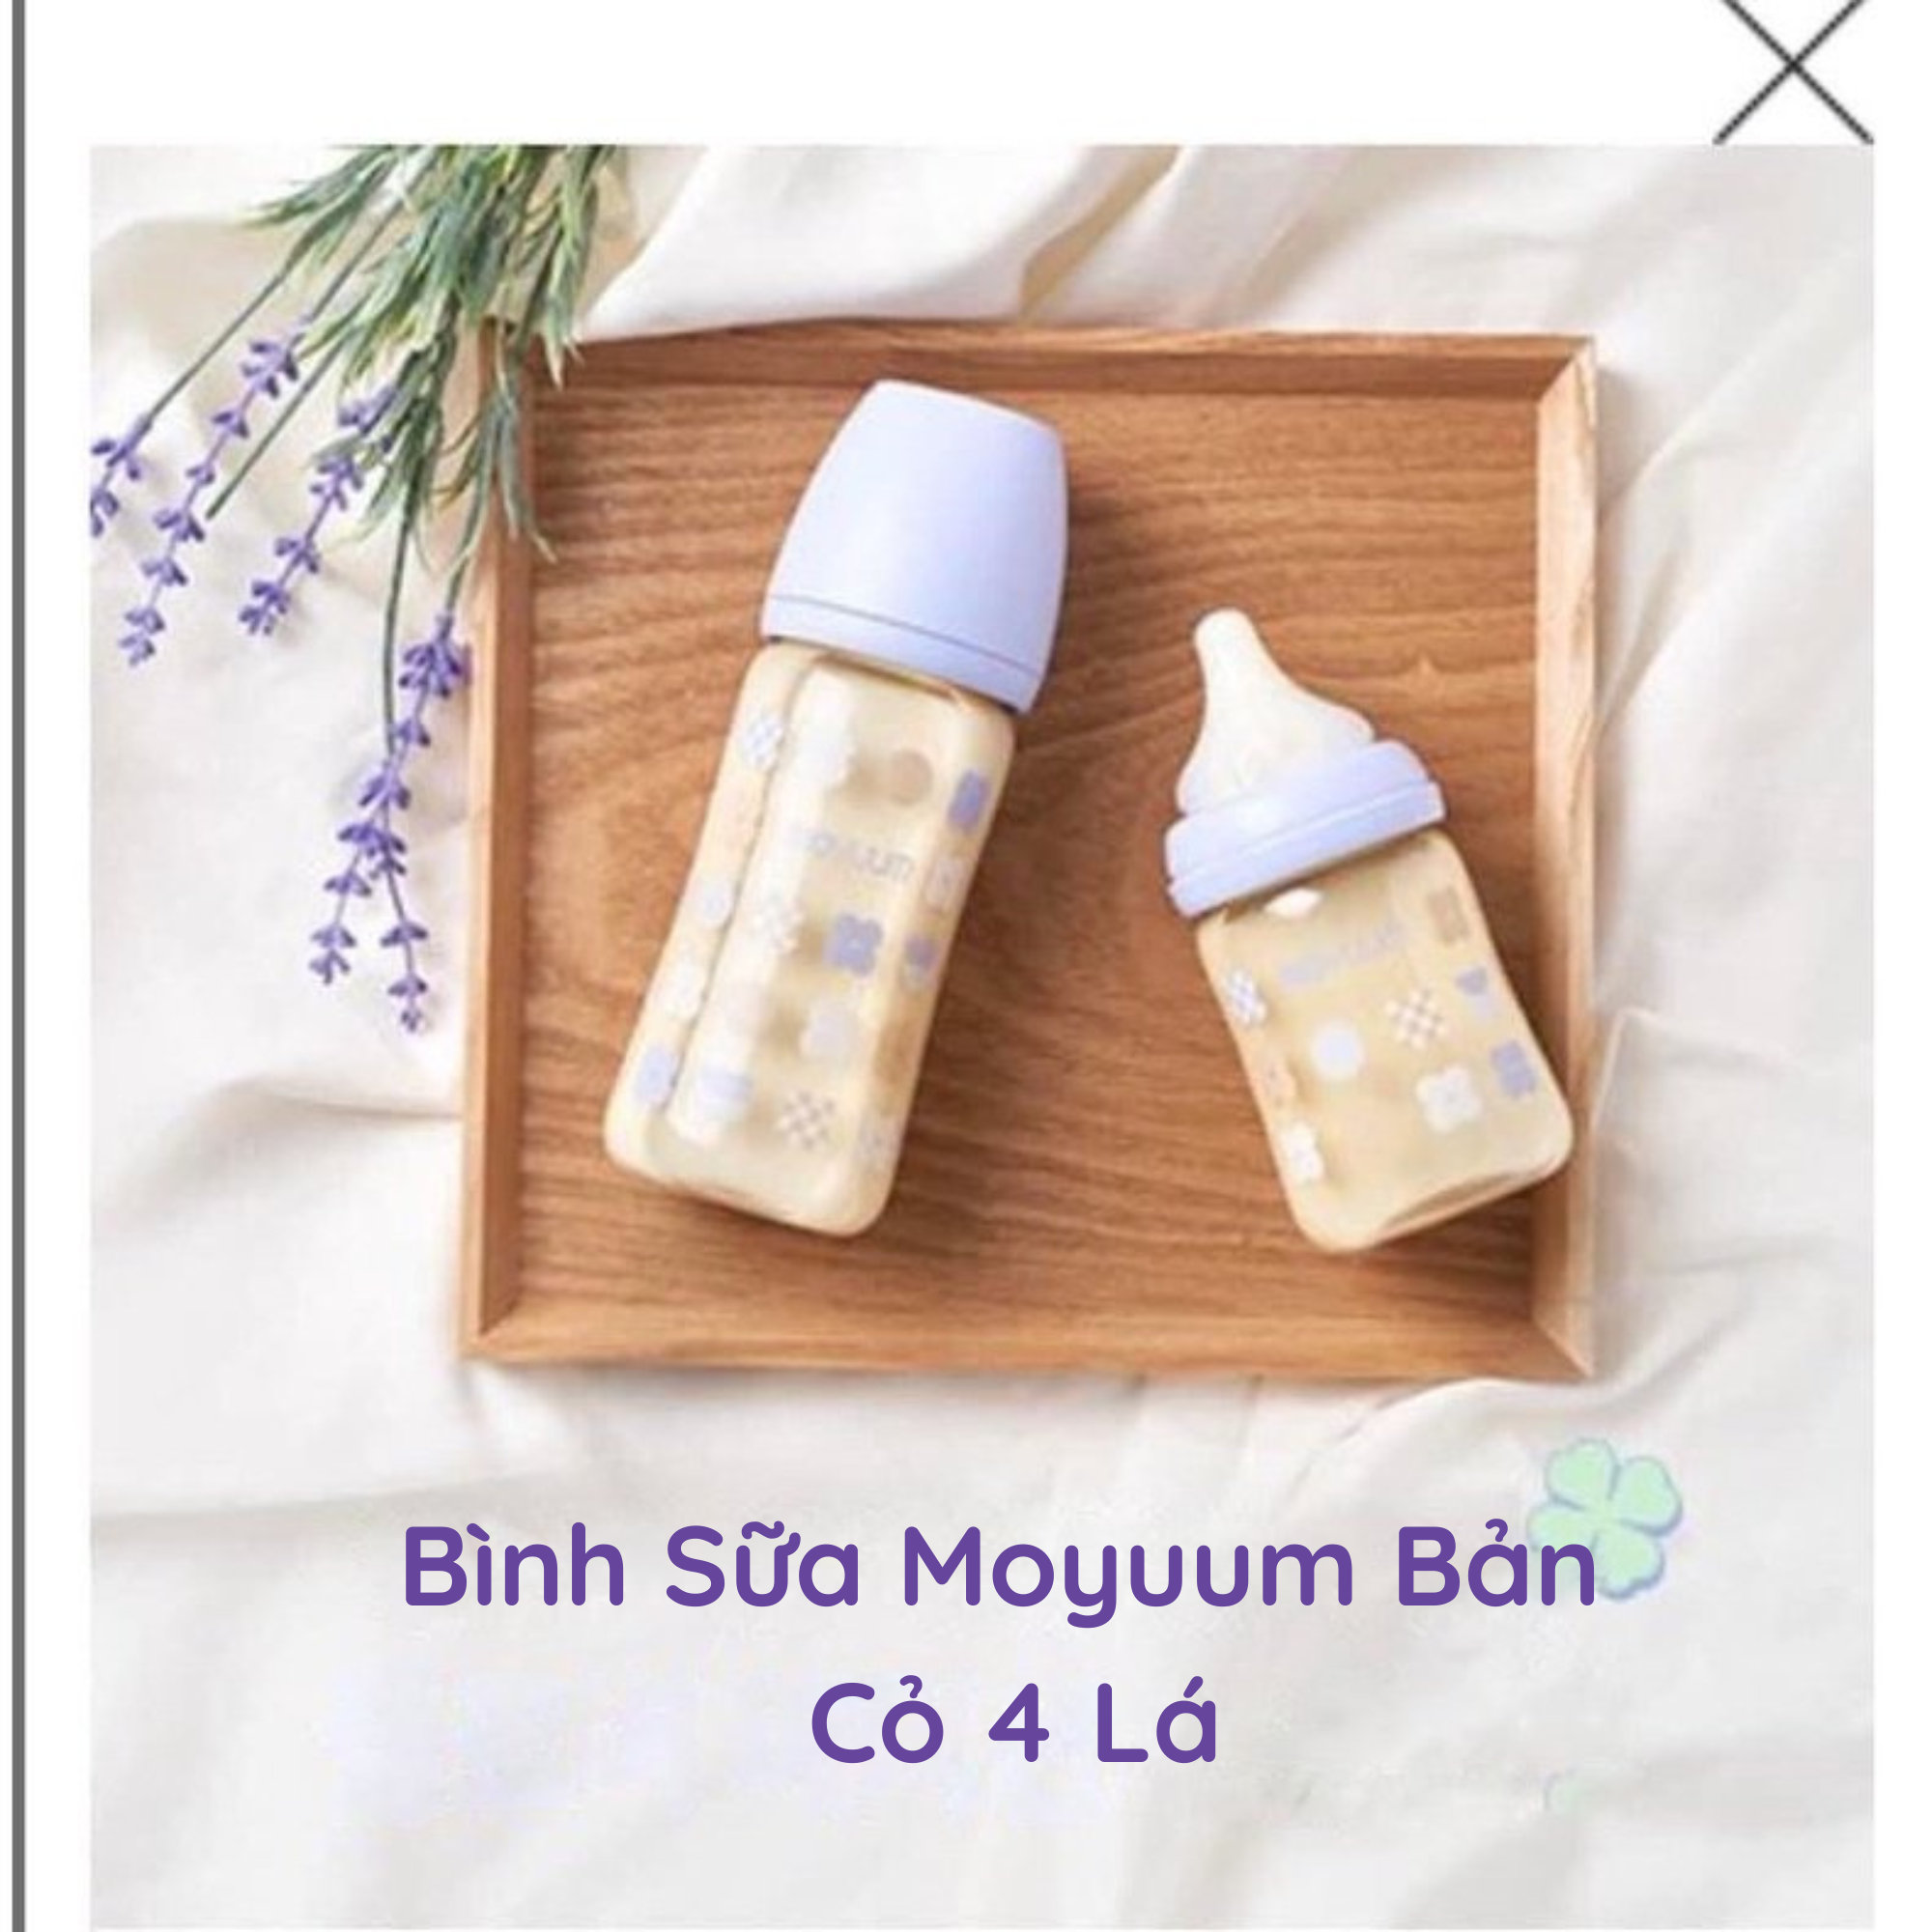 Bình Sữa Moyuum Cỏ 4 Lá PP Bởi Ấm Baby Nội Địa Hàn Quốc Nhựa PPSU Núm Silicon Siêu Mềm Cho Bé 170ml/ 270ml